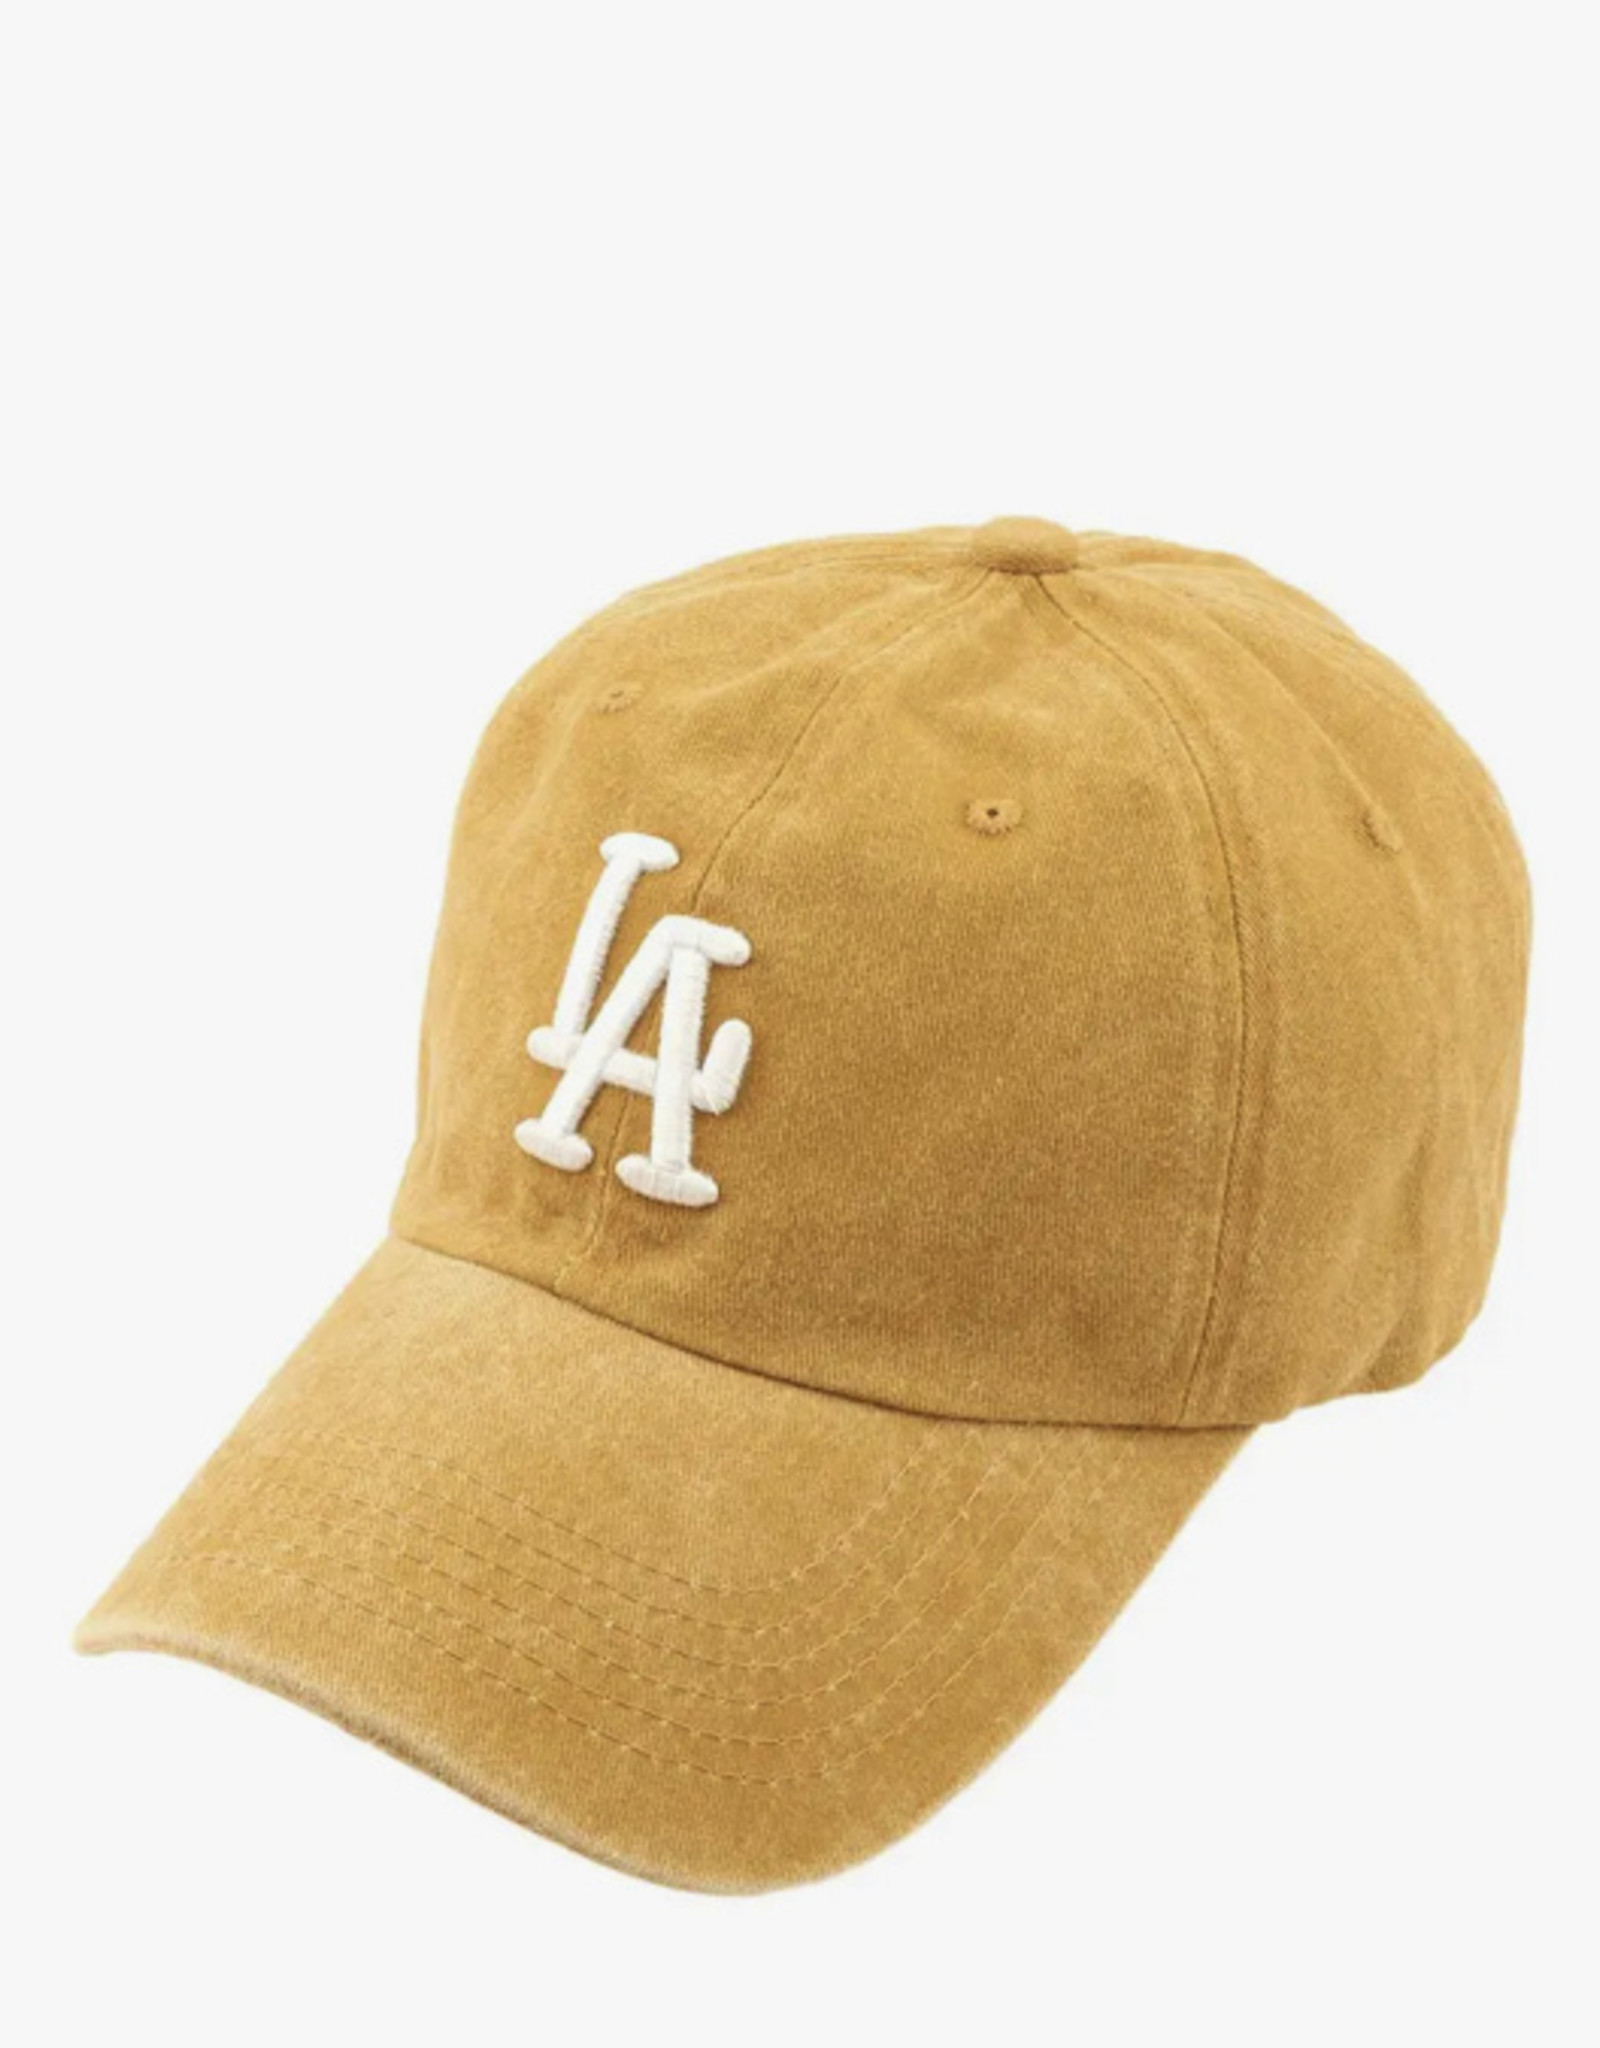 anbmade LA Pigment Baseball Cap